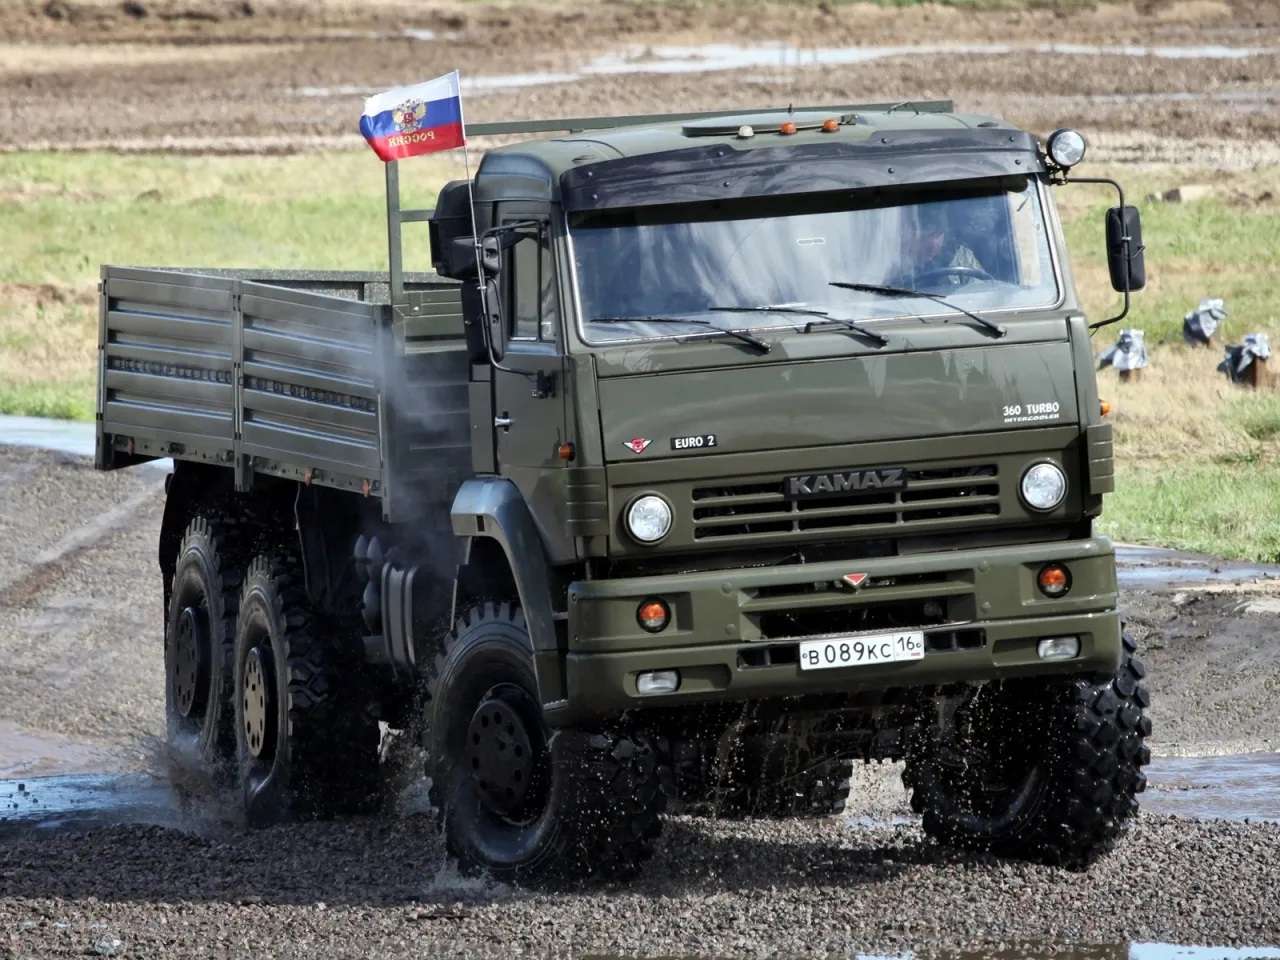 армейский грузовик пазл онлайн из фото